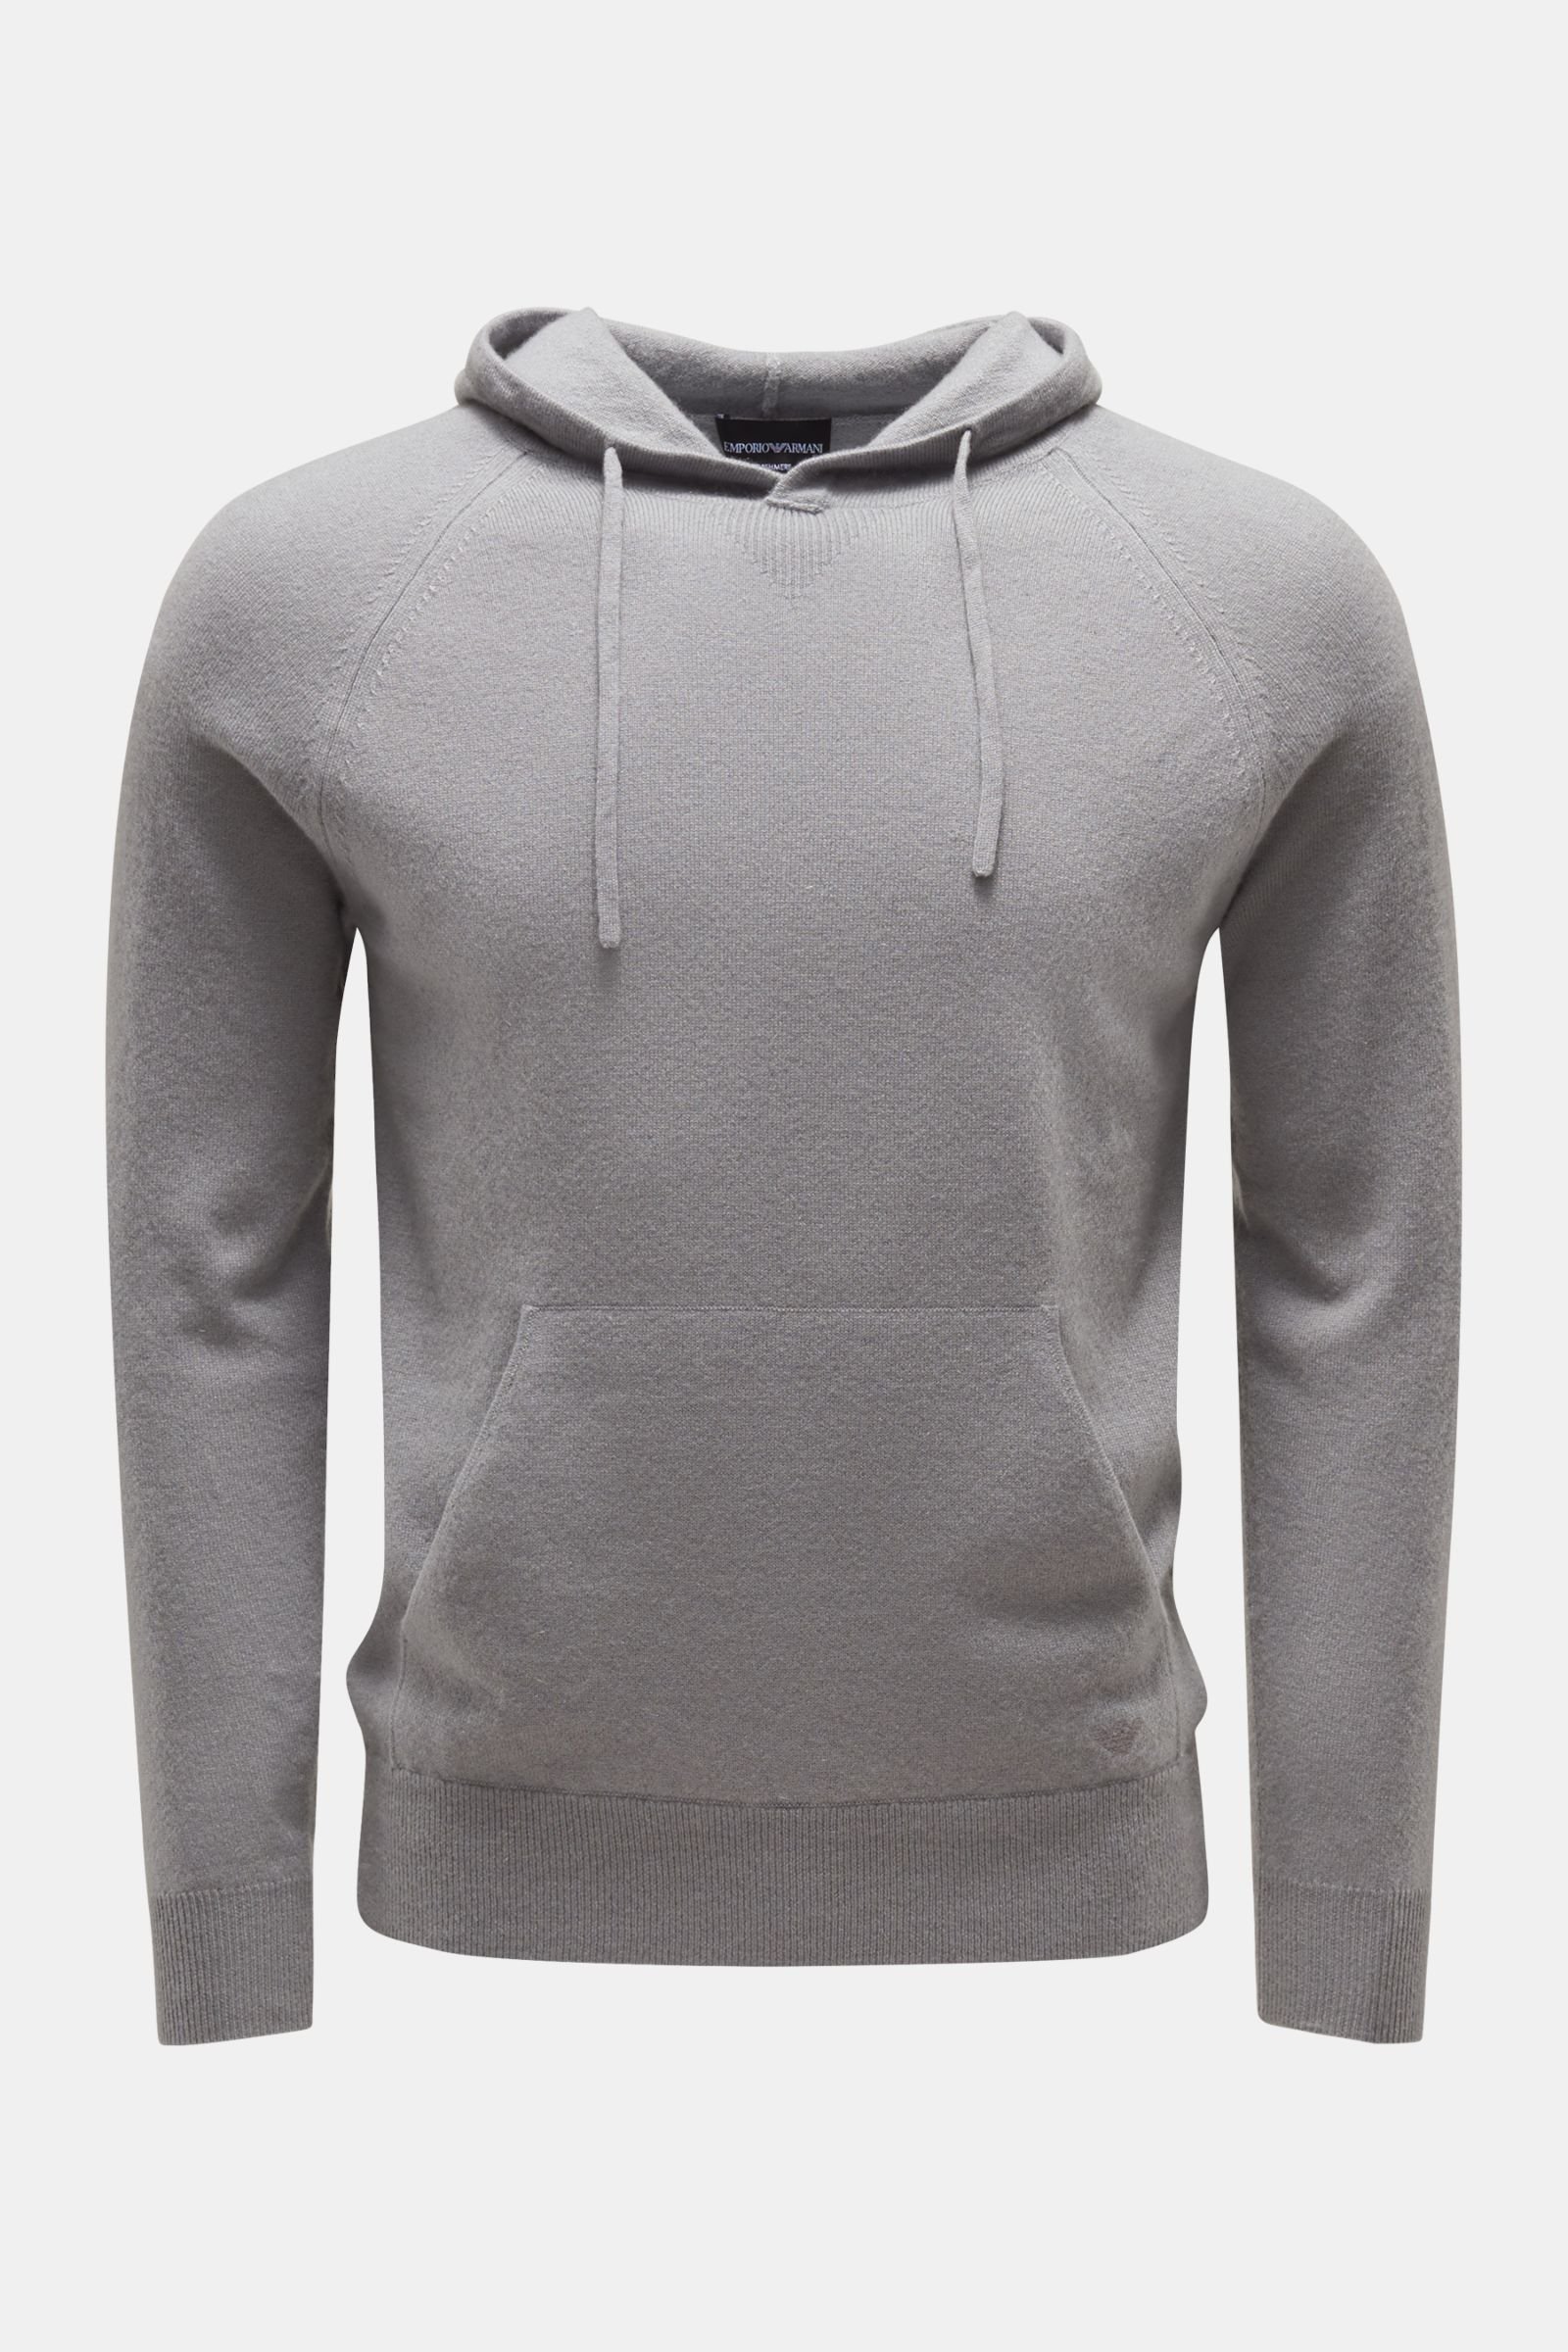 Cashmere hooded jumper light grey